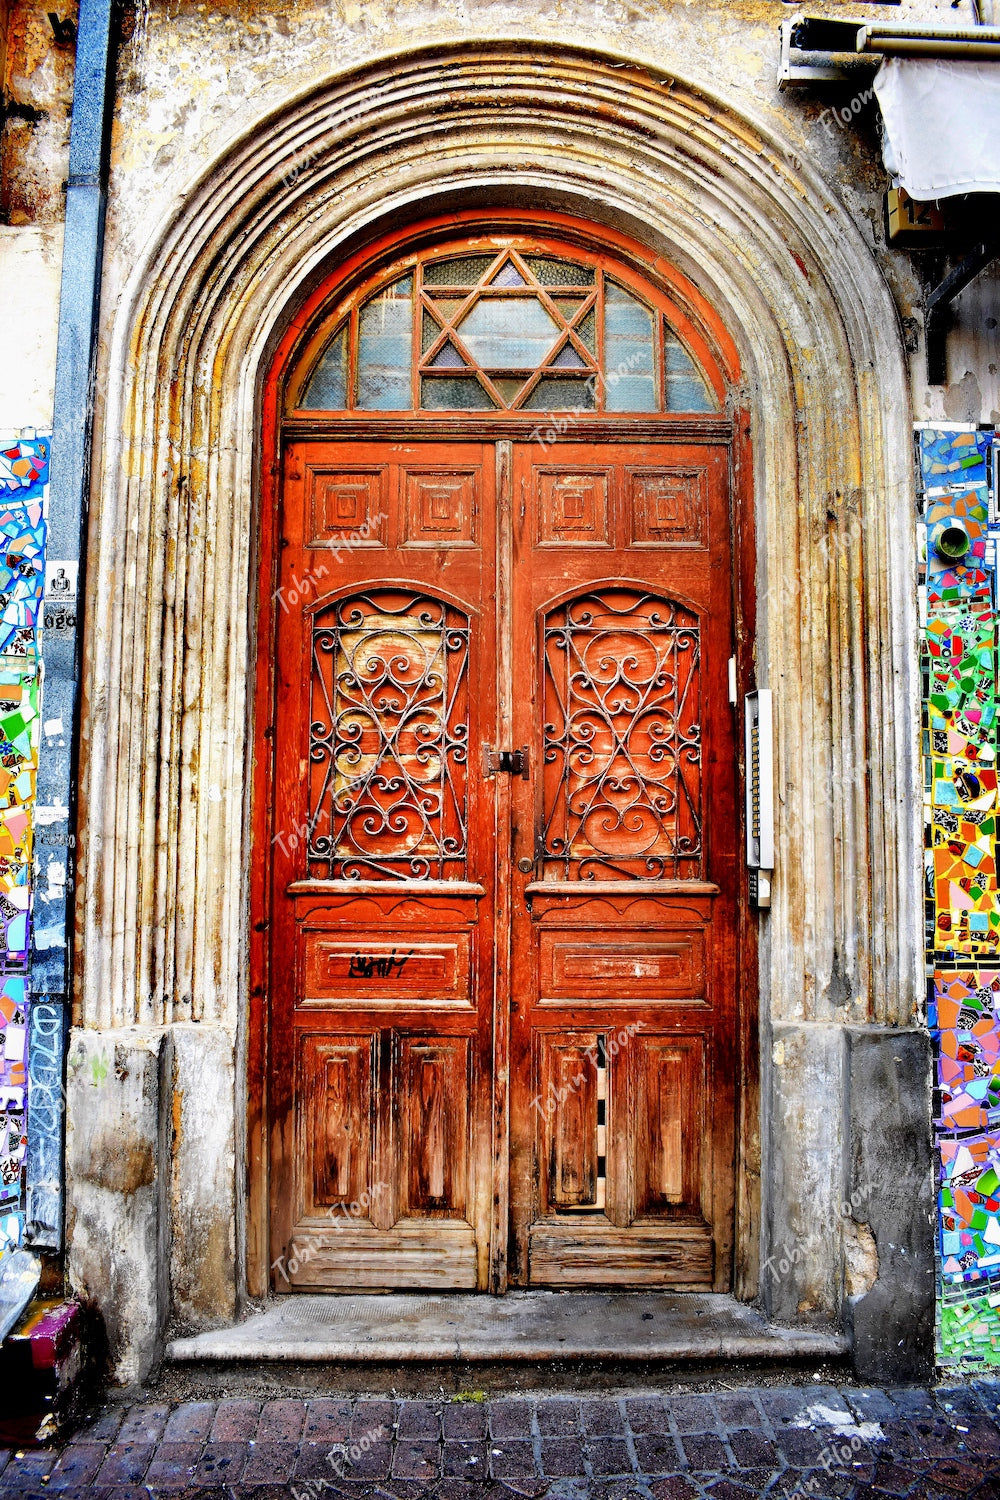 Israel:The door